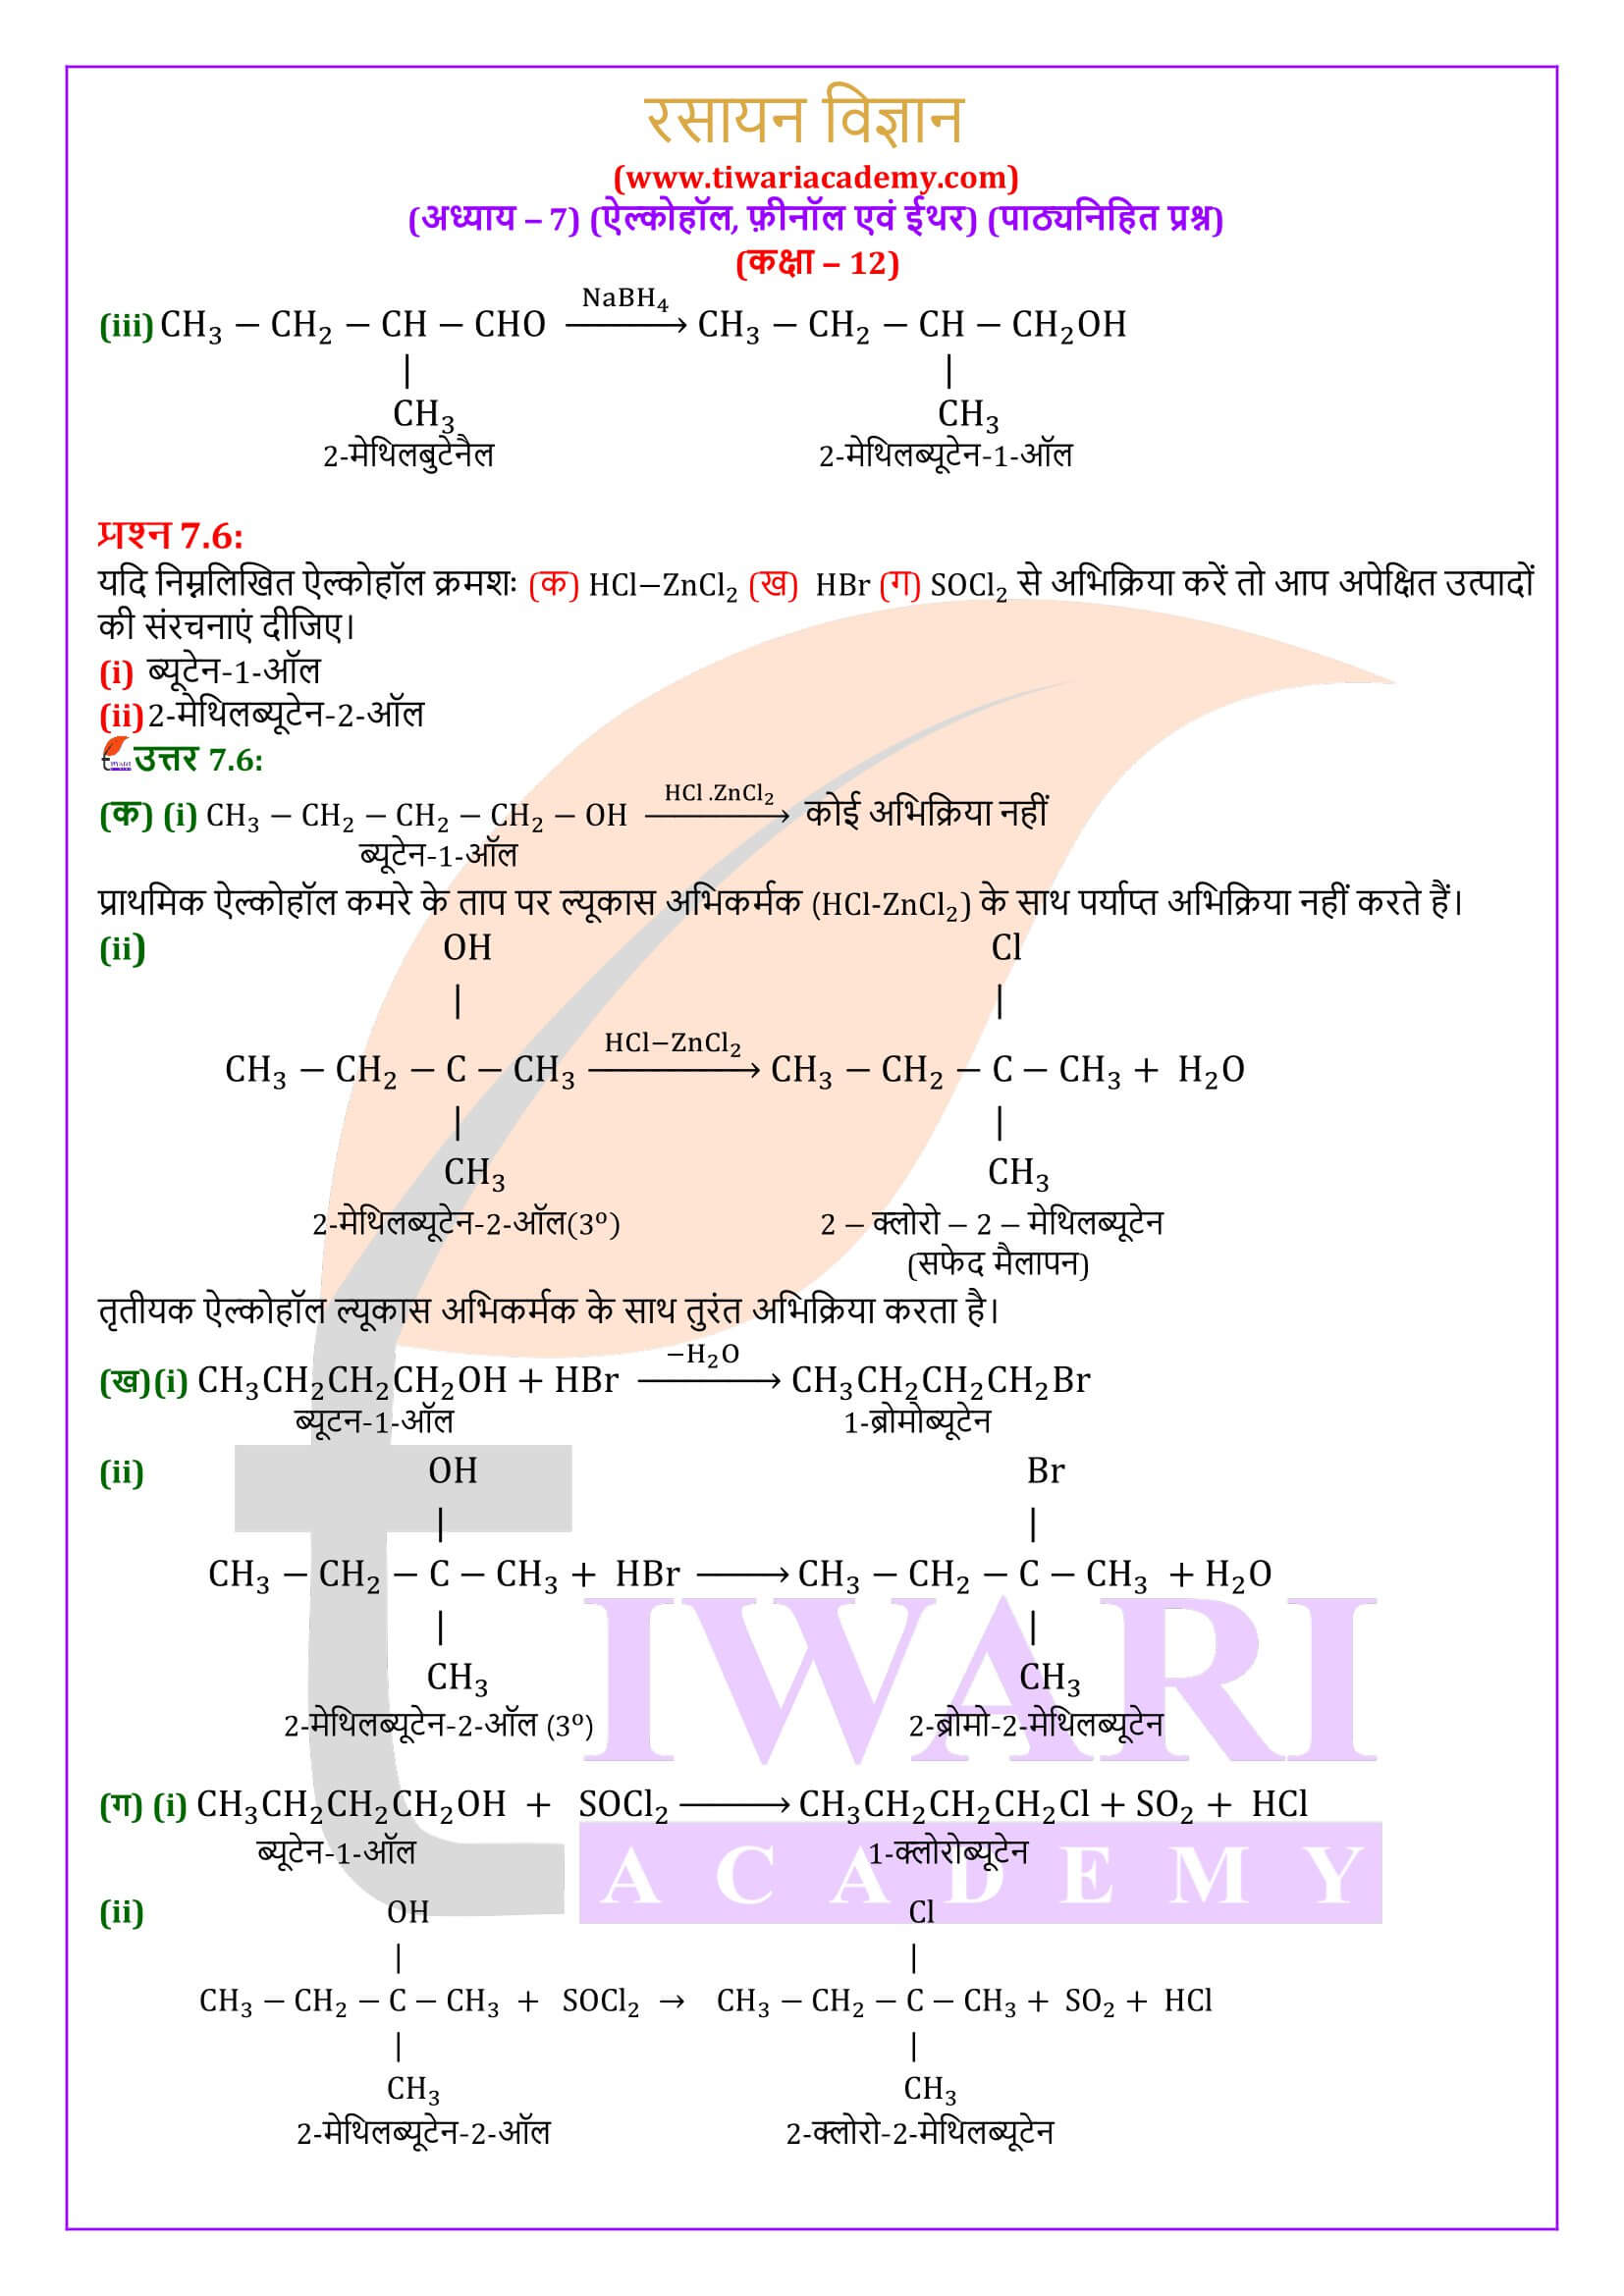 कक्षा 12 रसायन विज्ञान अध्याय 7 पाठ्यनिहित के हल